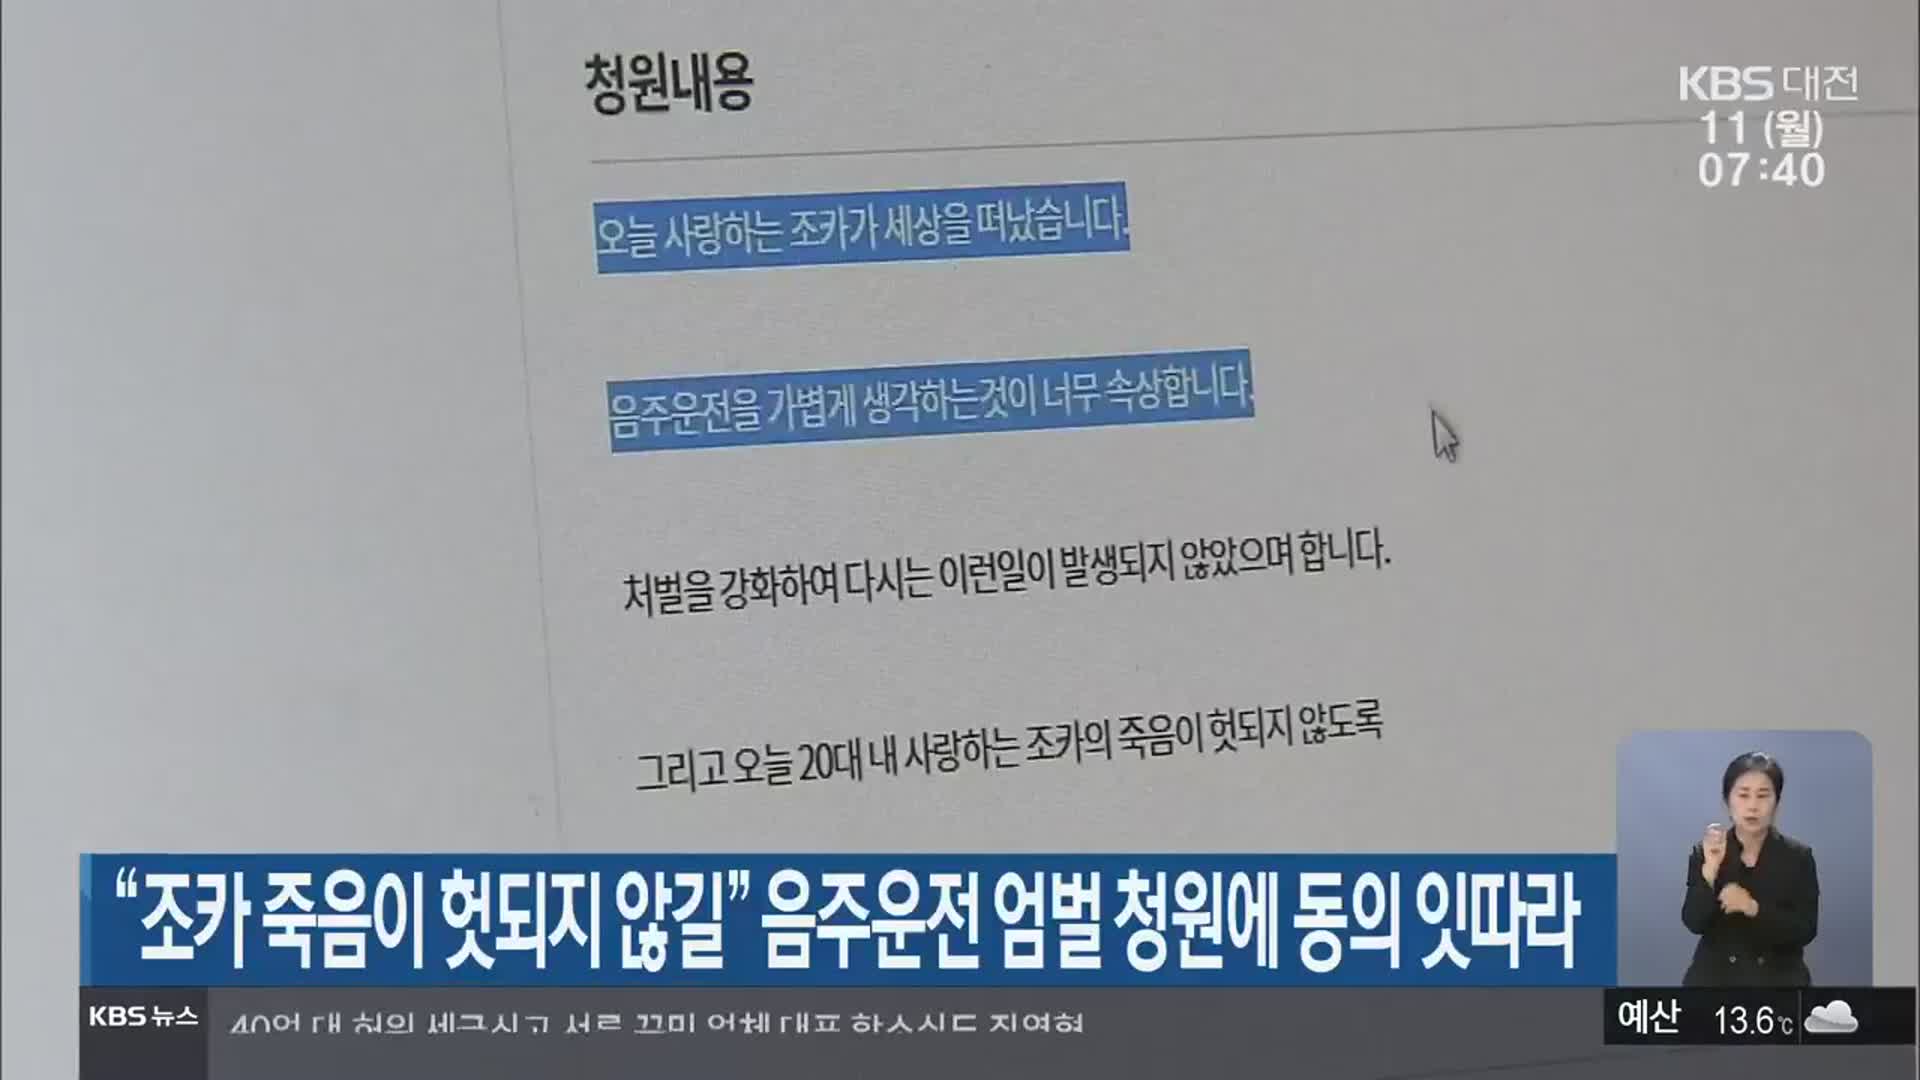 “조카 죽음이 헛되지 않길” 음주운전 엄벌 청원에 동의 잇따라